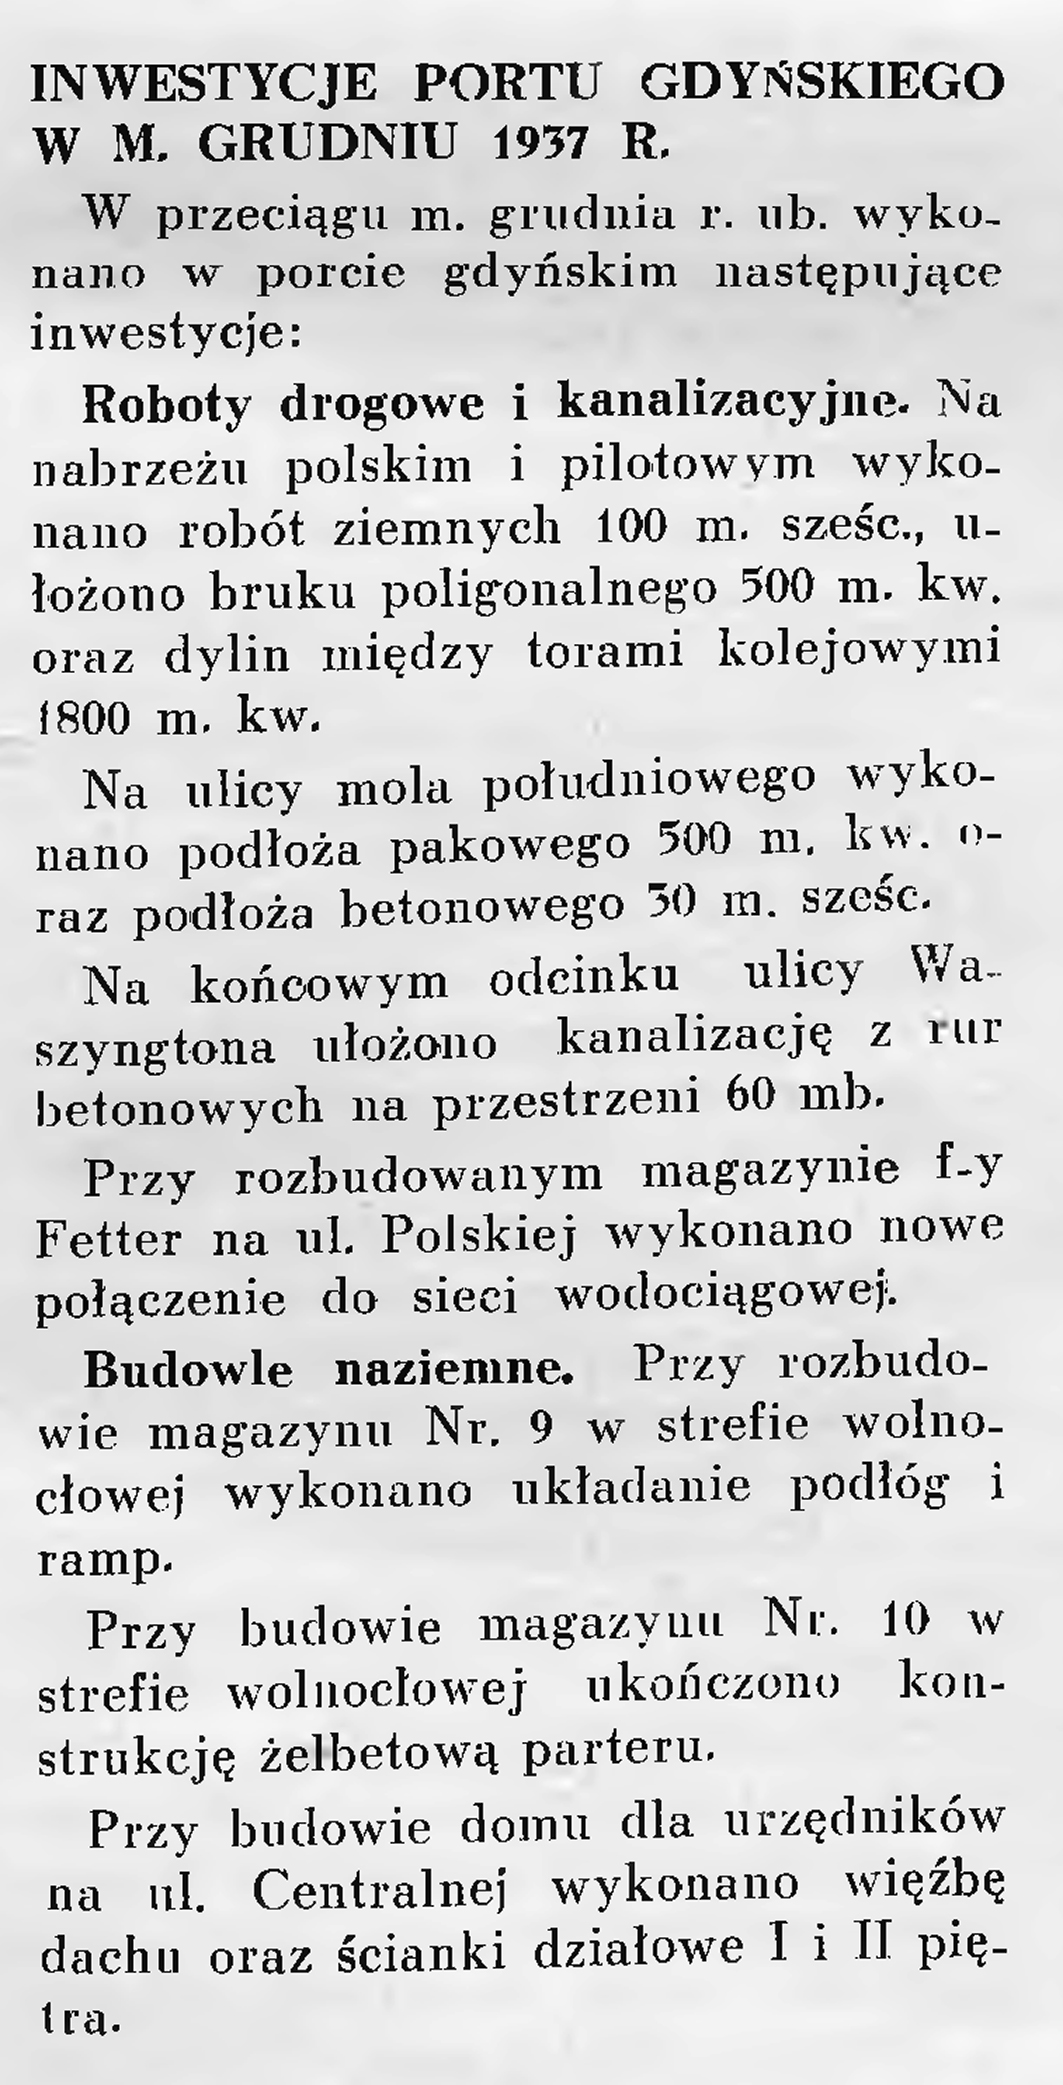 Inwestycje portu gdyńskiego w m. grudniu 1937 r.